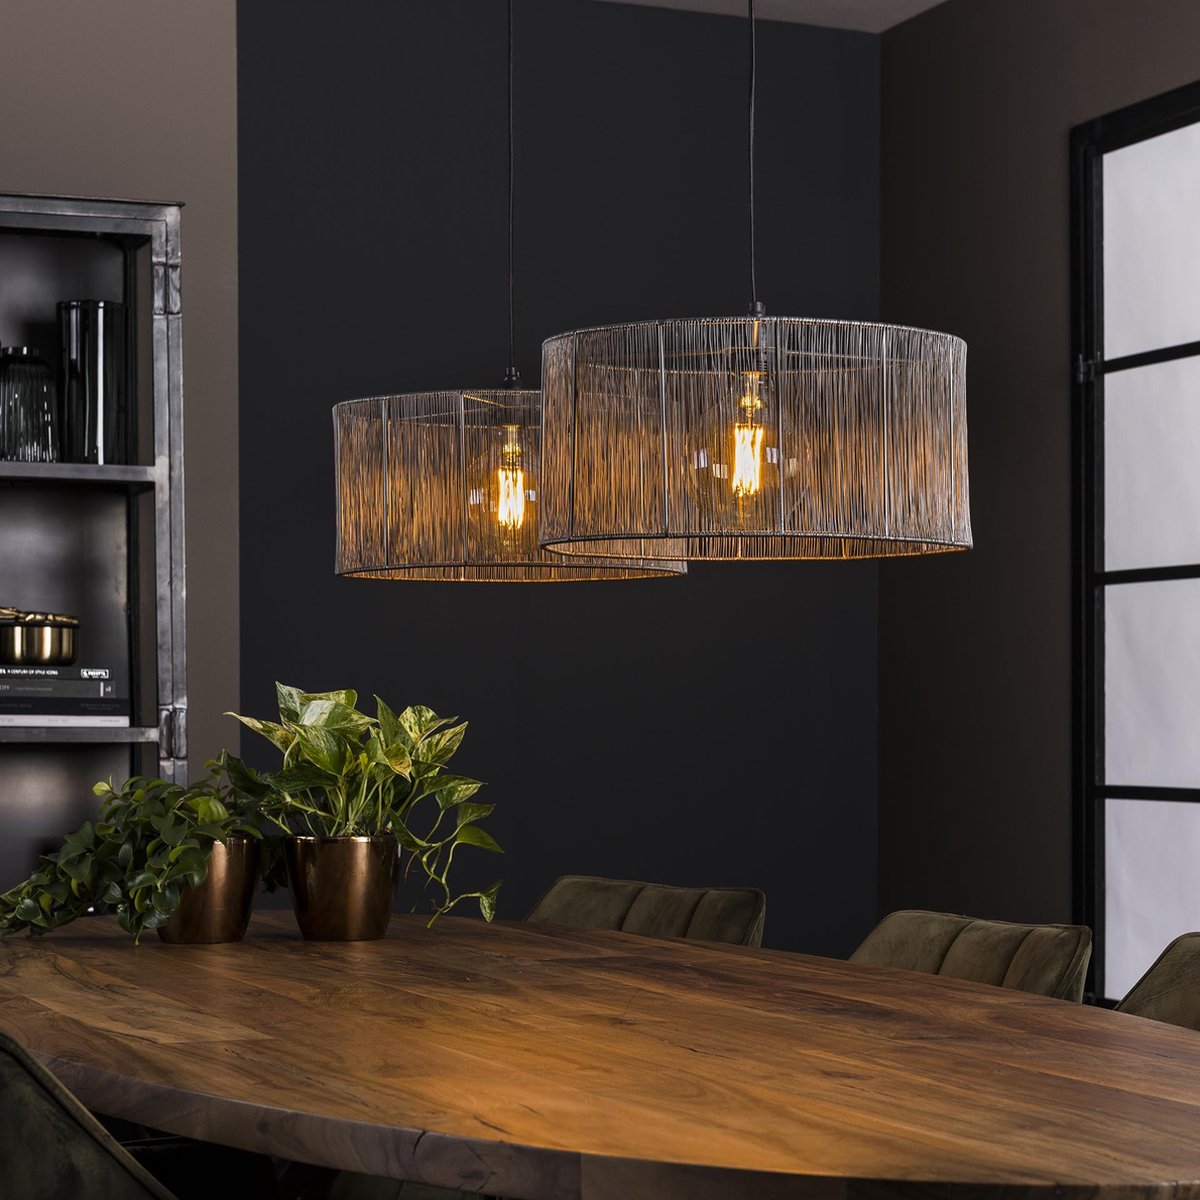 Hanglamp Stringshade | Ø 41 cm | 2-lichts | tot 150 cm in hoogte verstelbaar | zwart nikkel | modern landelijk design